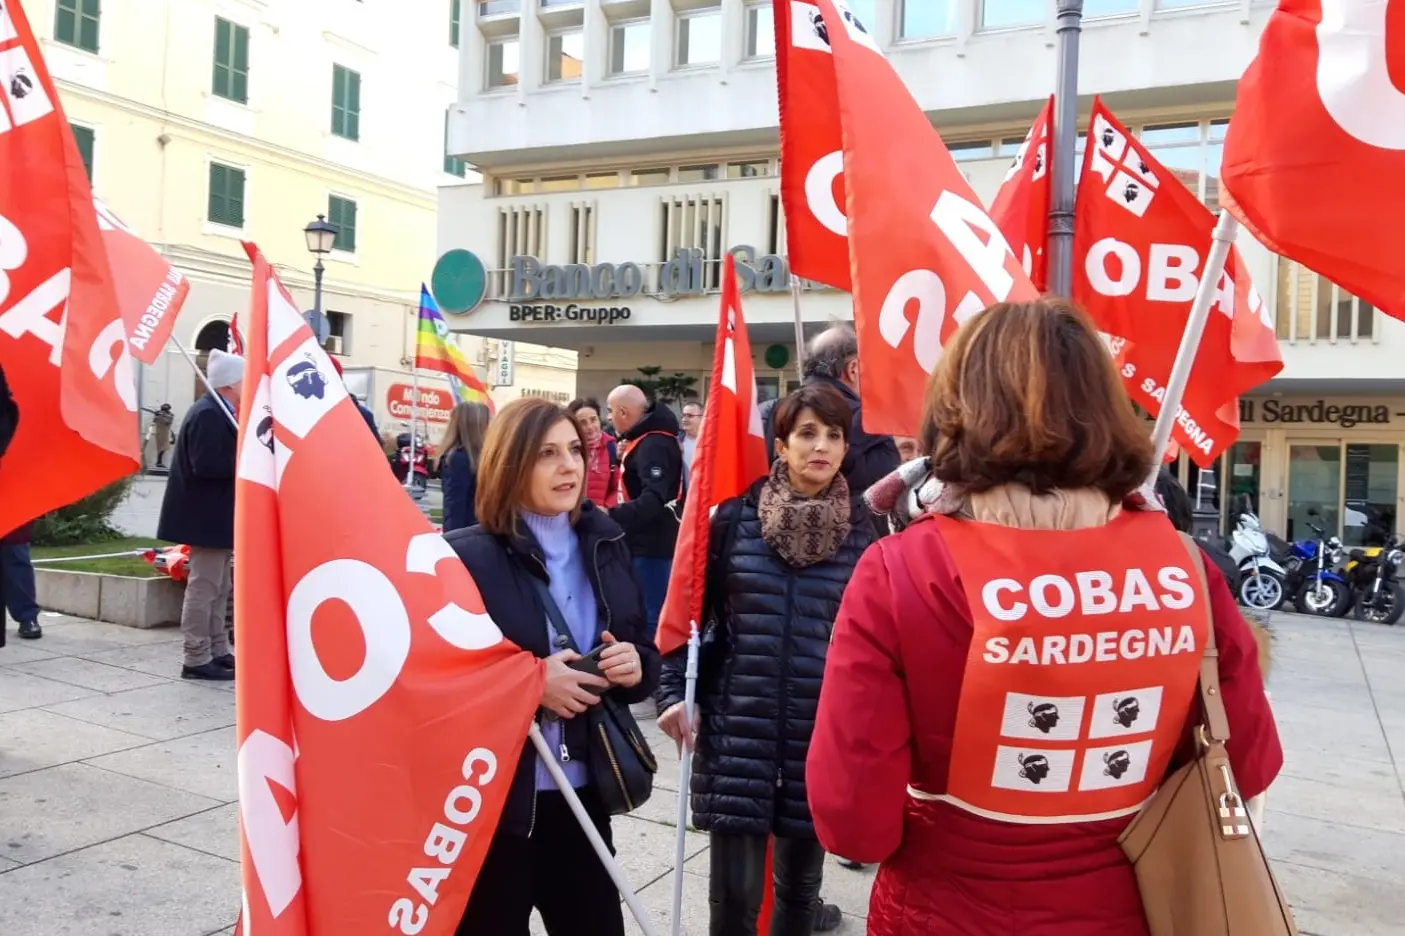 La manifestazione dei Cobas a Sassari (foto Tellini)